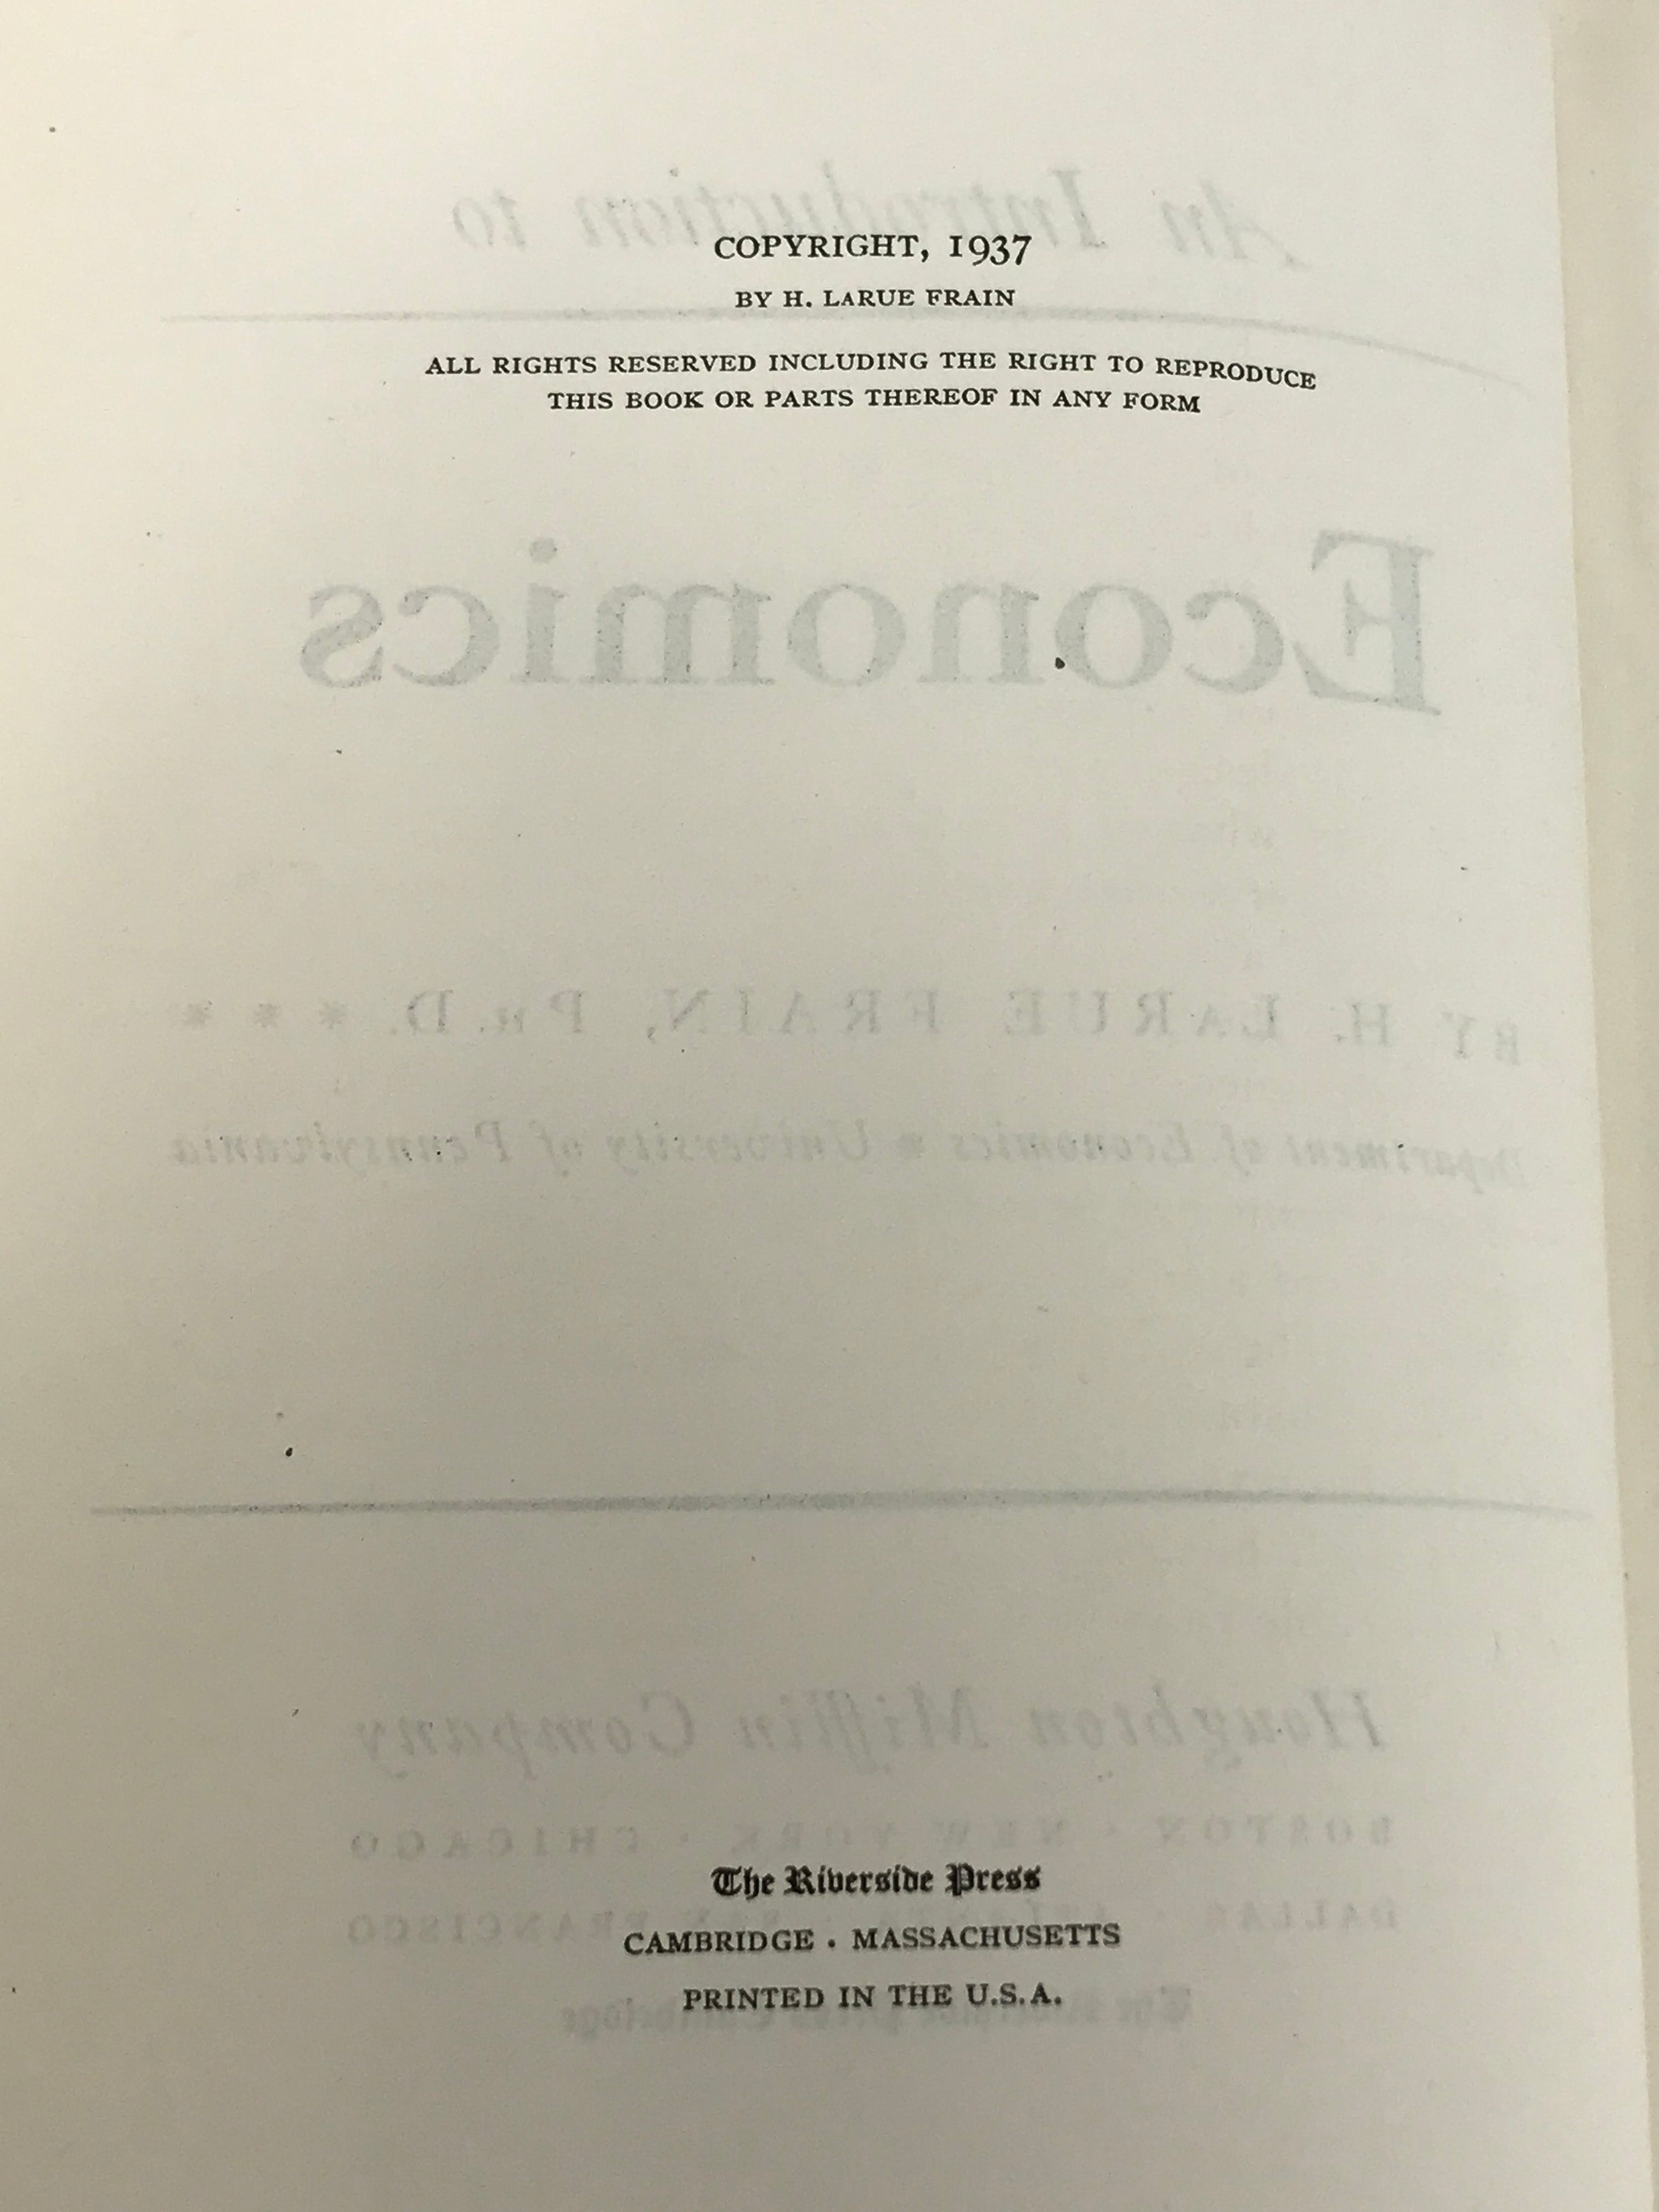 Vintage An Introduction to Economics by H. LaRue Frain 1937 HC